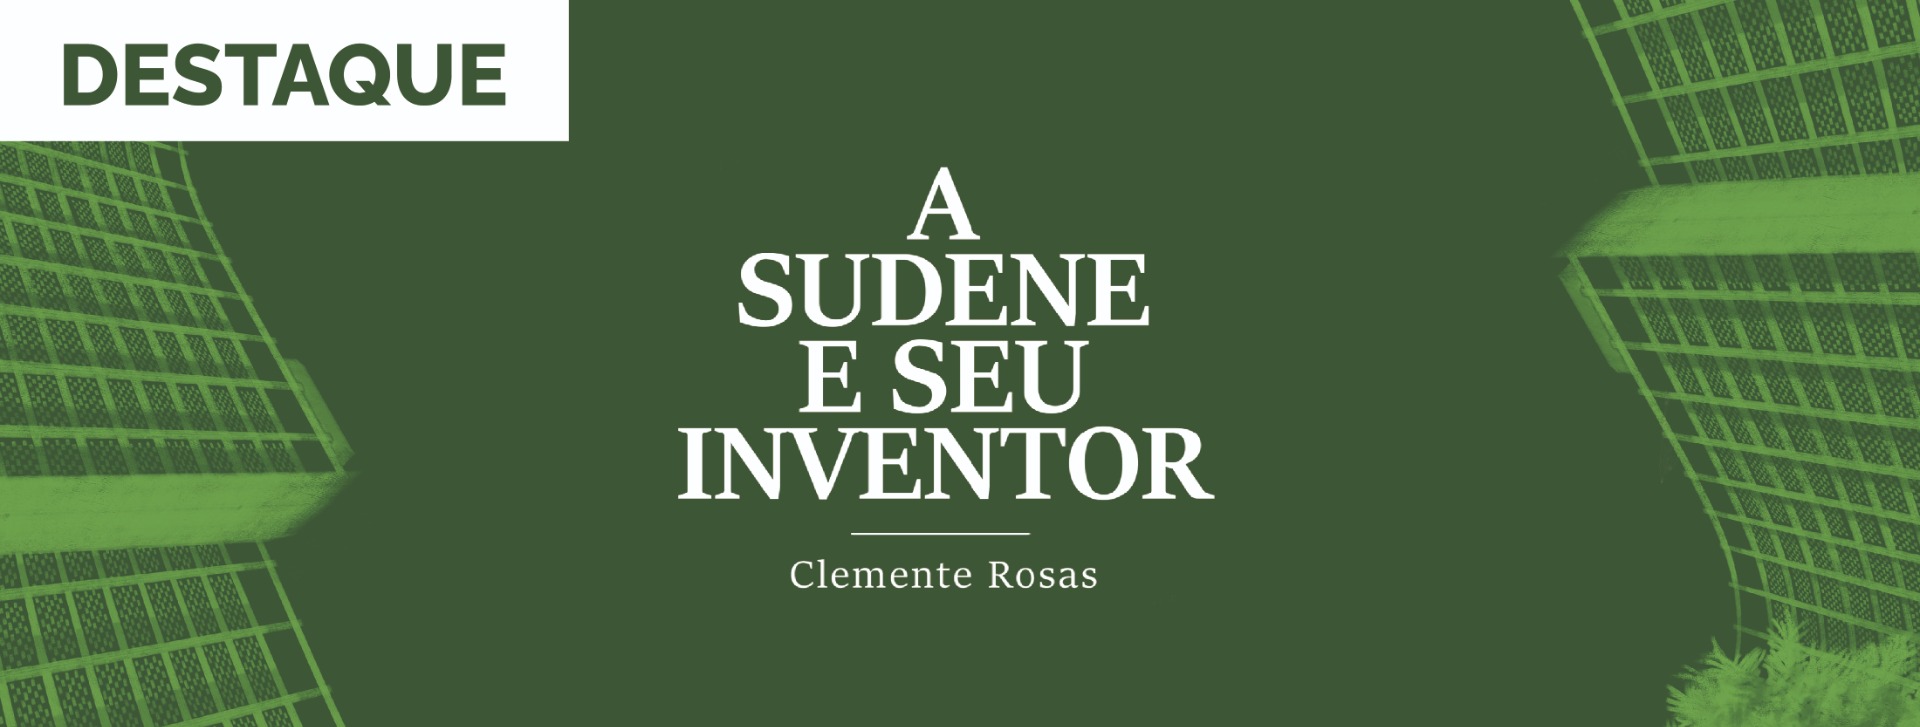 A Sudene e seu inventor